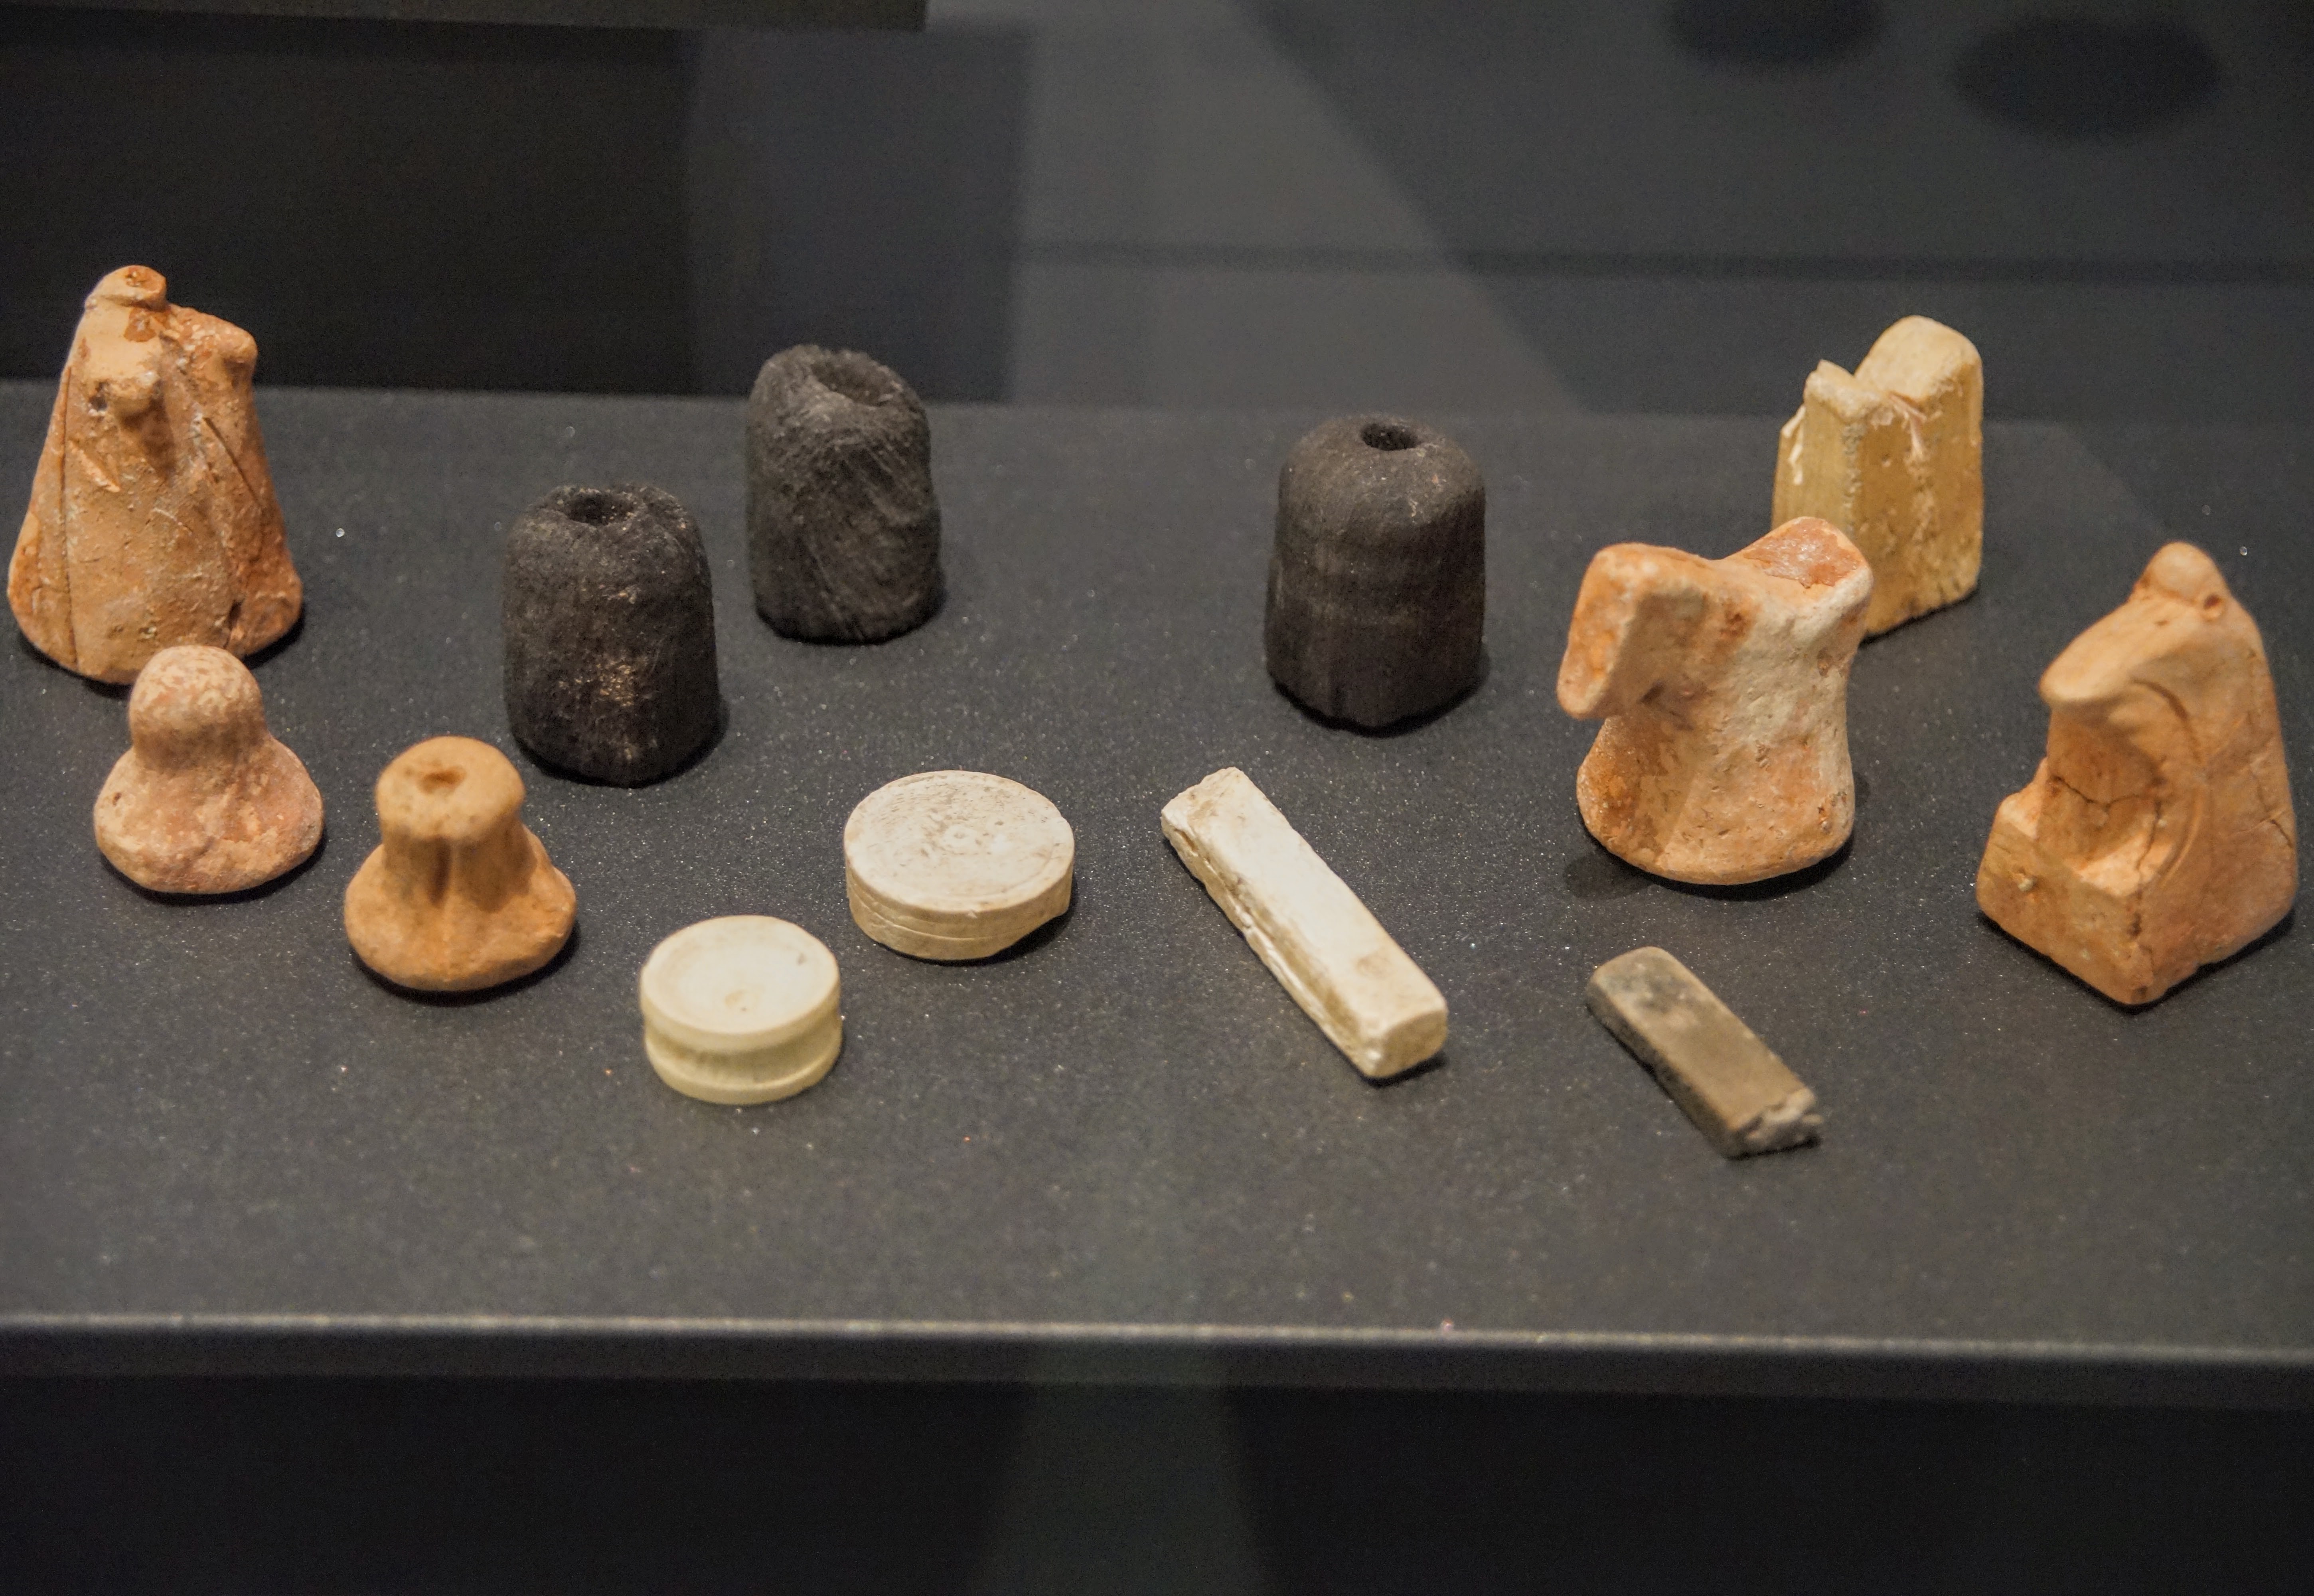 Κομμάτια παιχνιδιών (ανάμεσά τους και από το σκάκι) που βρέθηκαν στο λιμάνι Siraf του Ιράν (800 - 1000 μ.Χ.). Φωτογραφία Νίκος Πράσσος@paspartou.gr.